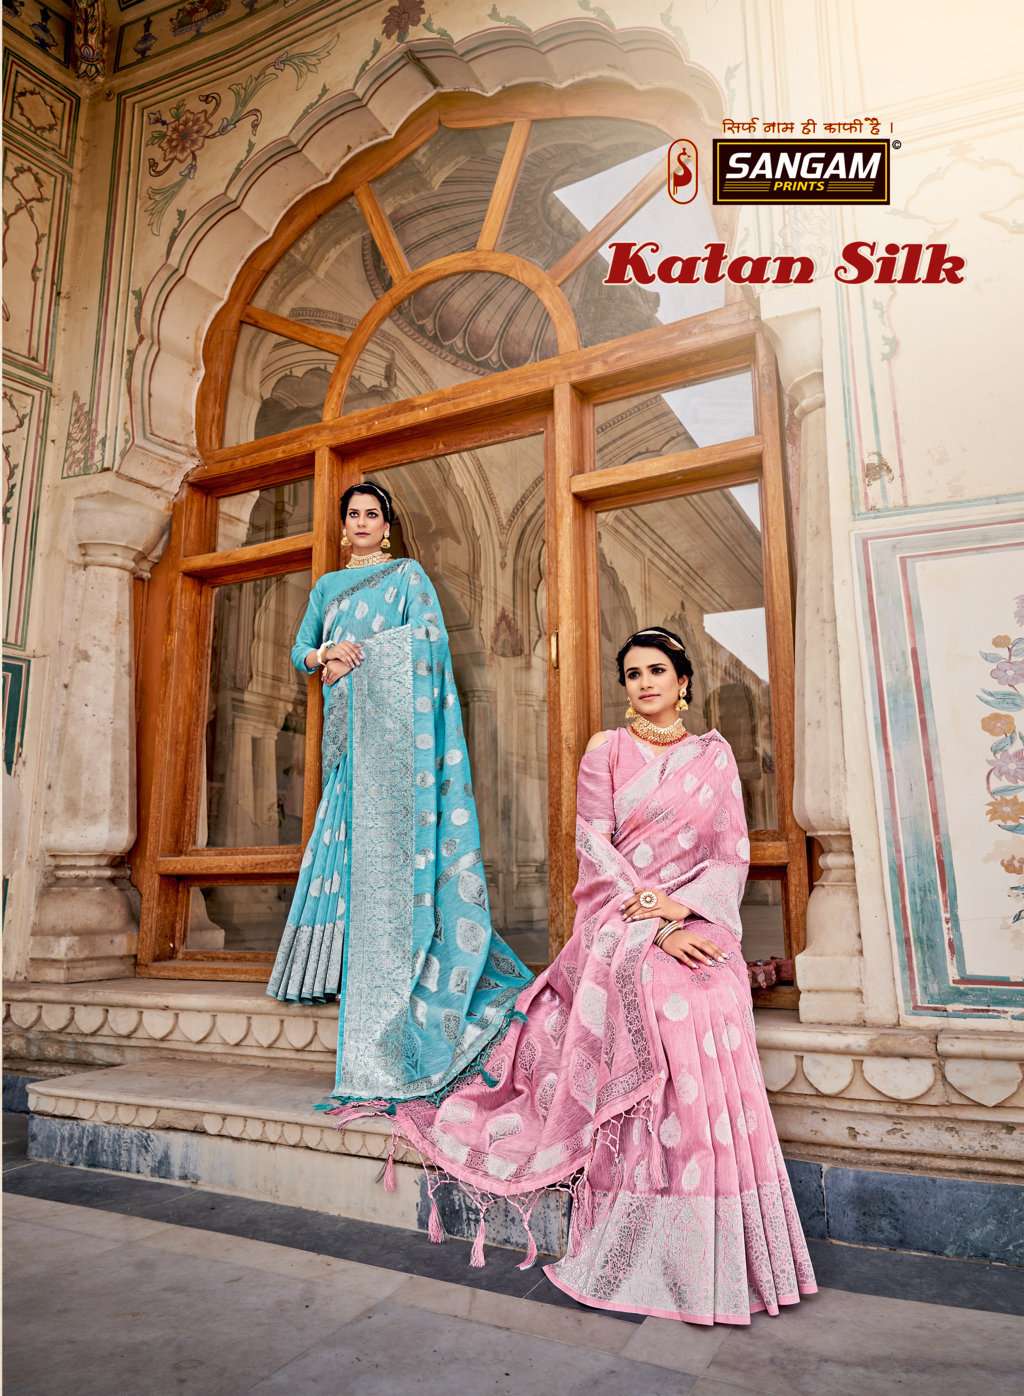 sangam prints katan silk linen weaving saris wholesaler